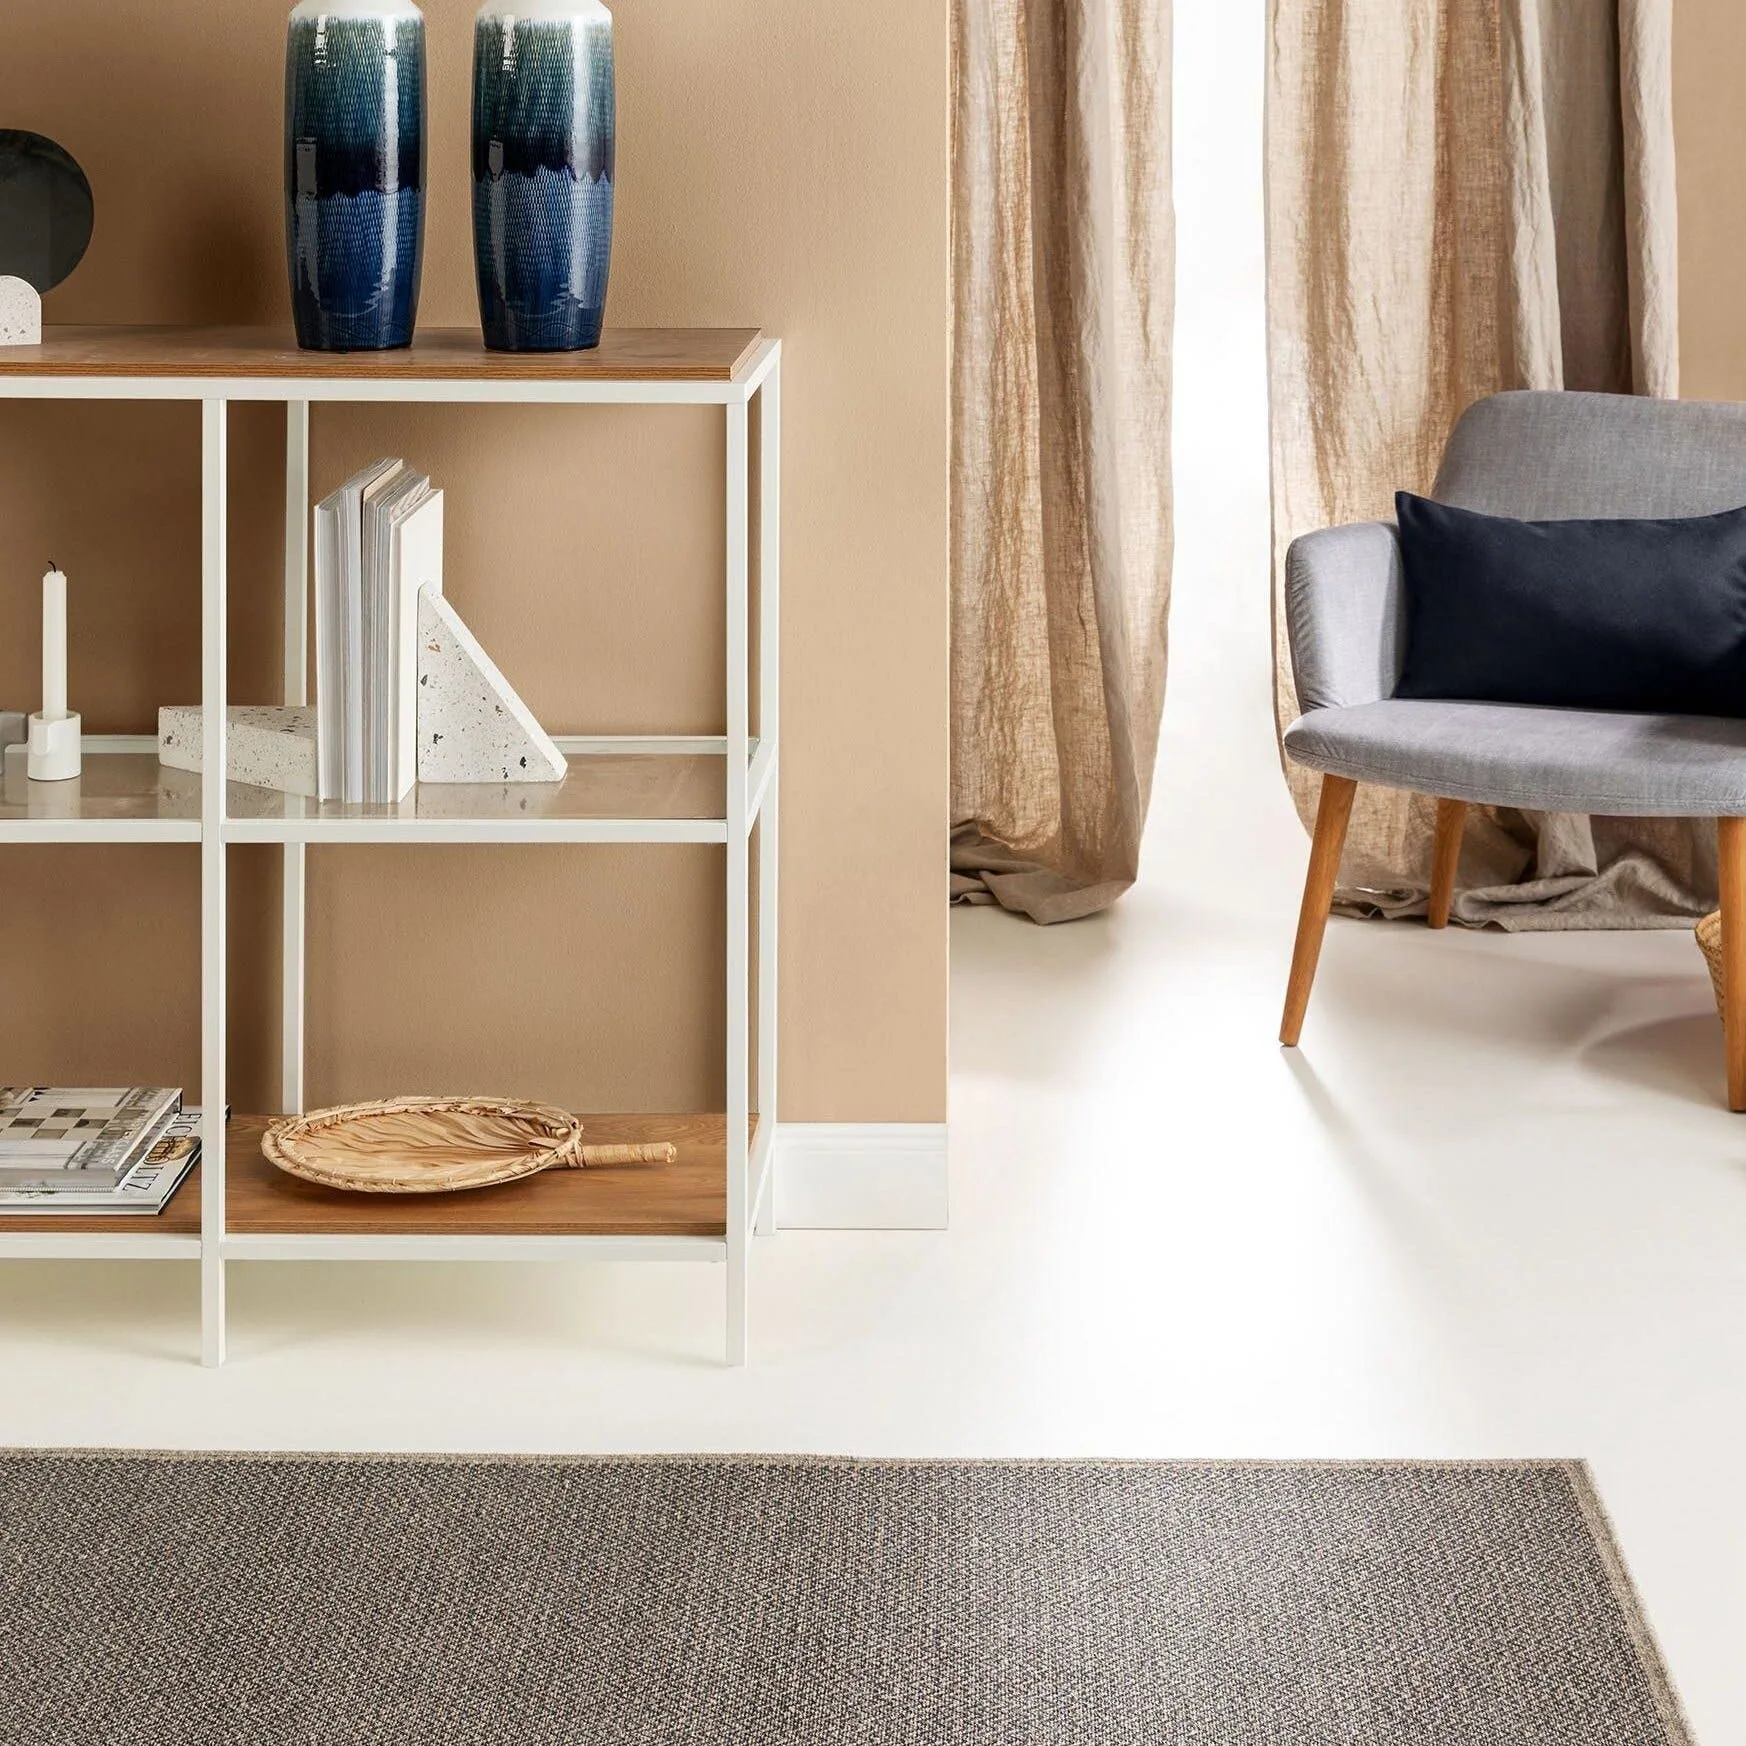 Minimalistisches Wohnzimmer mit Regal aus weißem Metall und einem grauen Sessel für einen Look im reduzierten Japandi